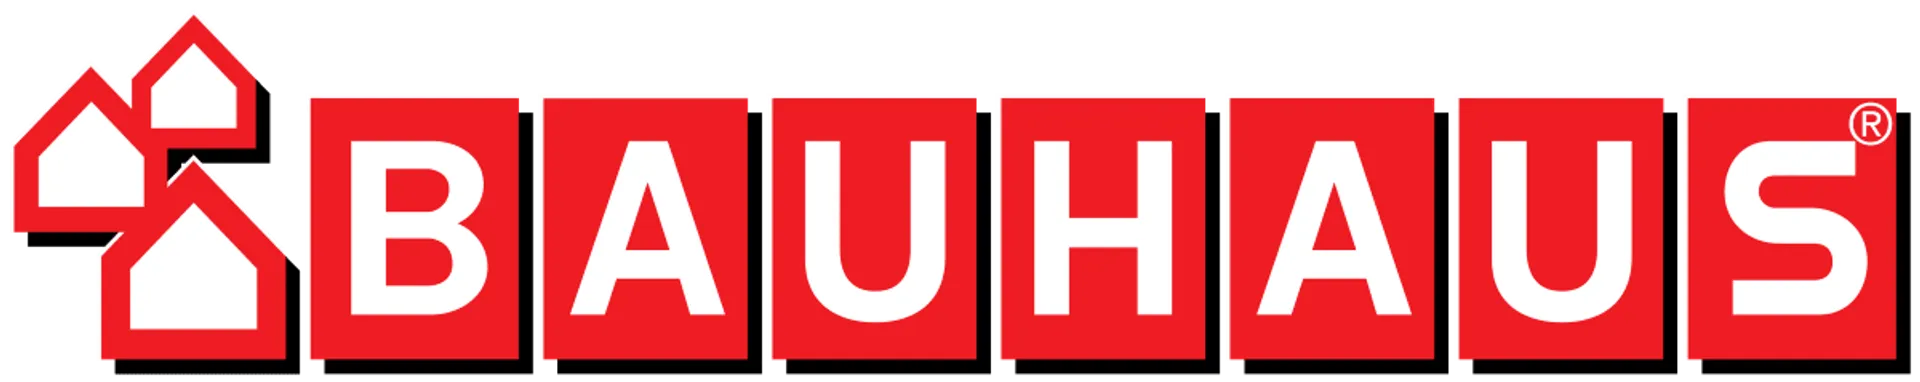 BAUHAUS logo de catálogo